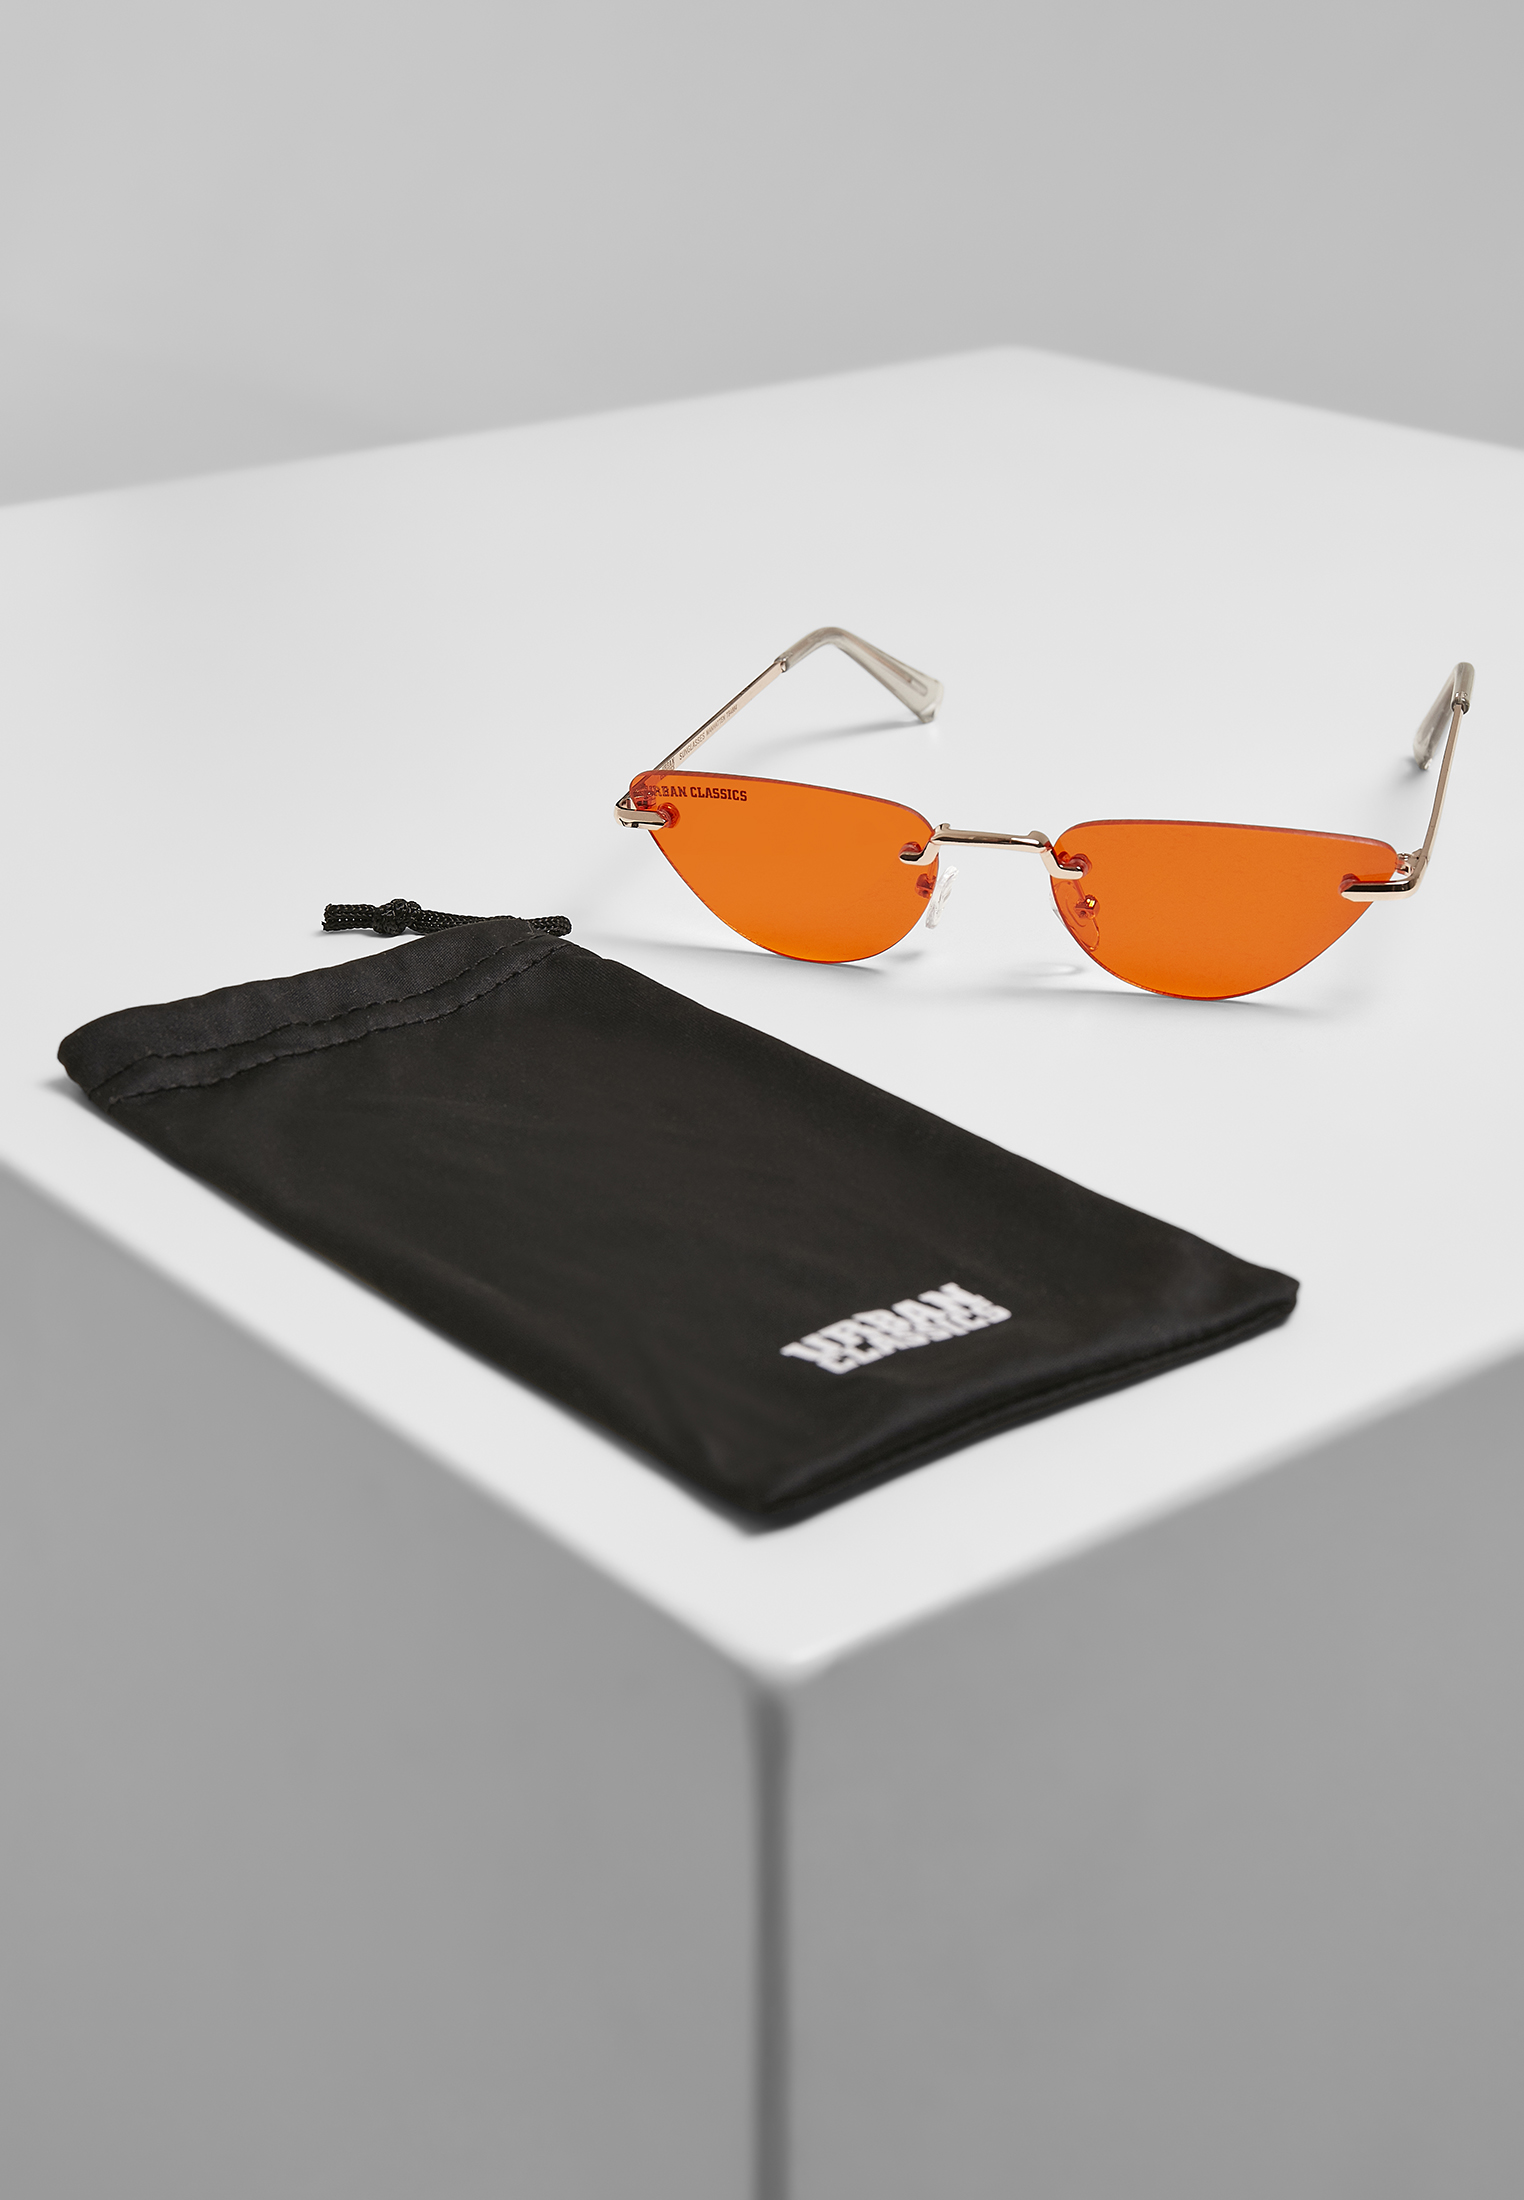 Sonnenbrillen Sunglasses Manhatten 2-Pack in Farbe silver/black+gold/orange